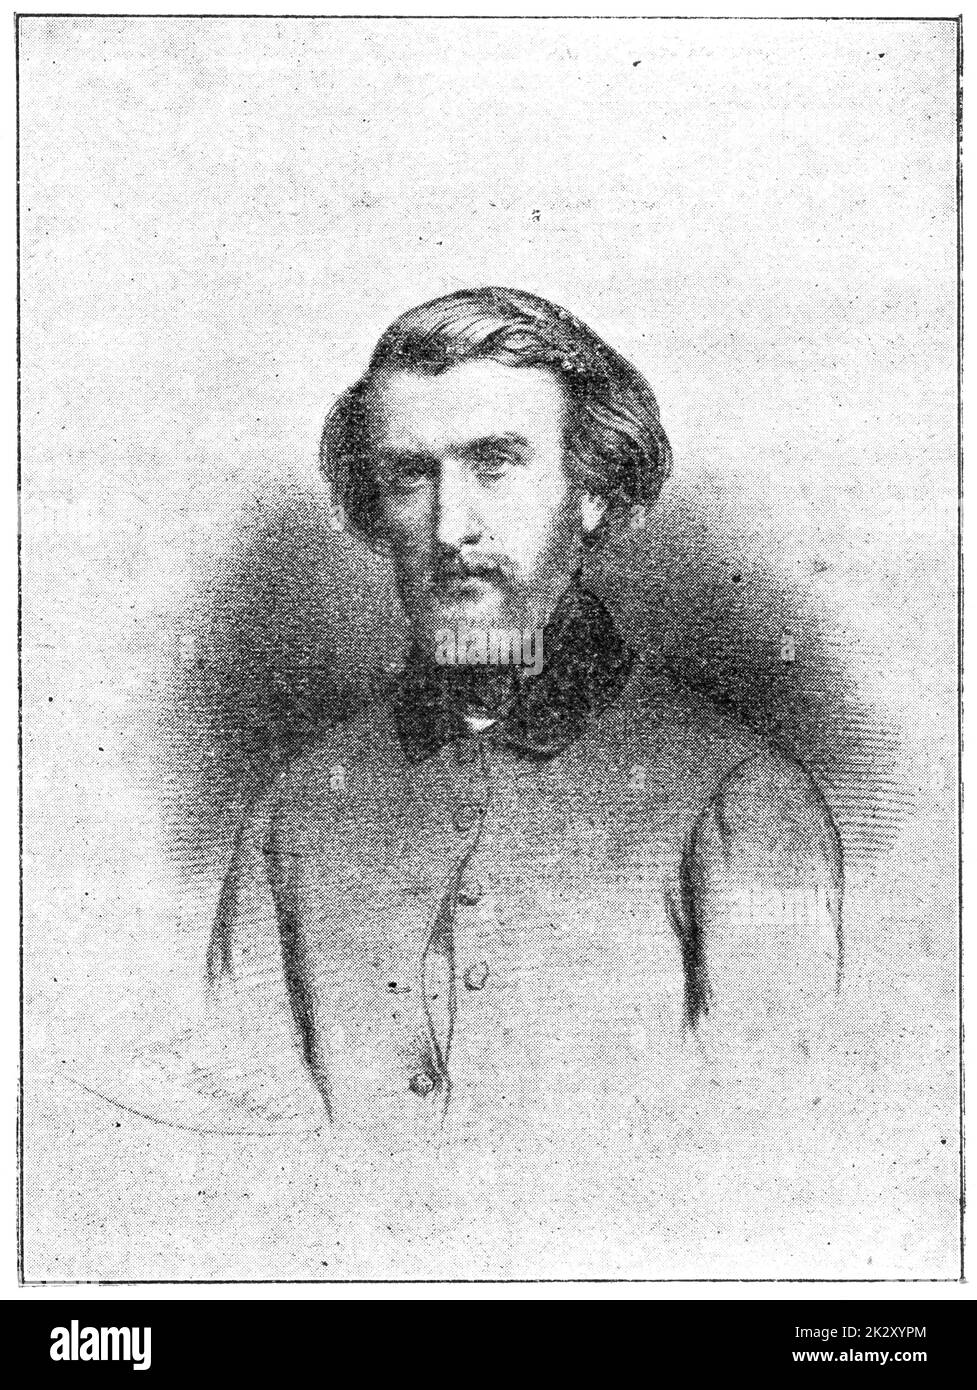 Retrato de Ambroise Thomas - compositor y maestro francés, mejor conocido por sus óperas Mignon (1866) y Hamlet (1868). Ilustración del siglo 19. Fondo blanco. Foto de stock